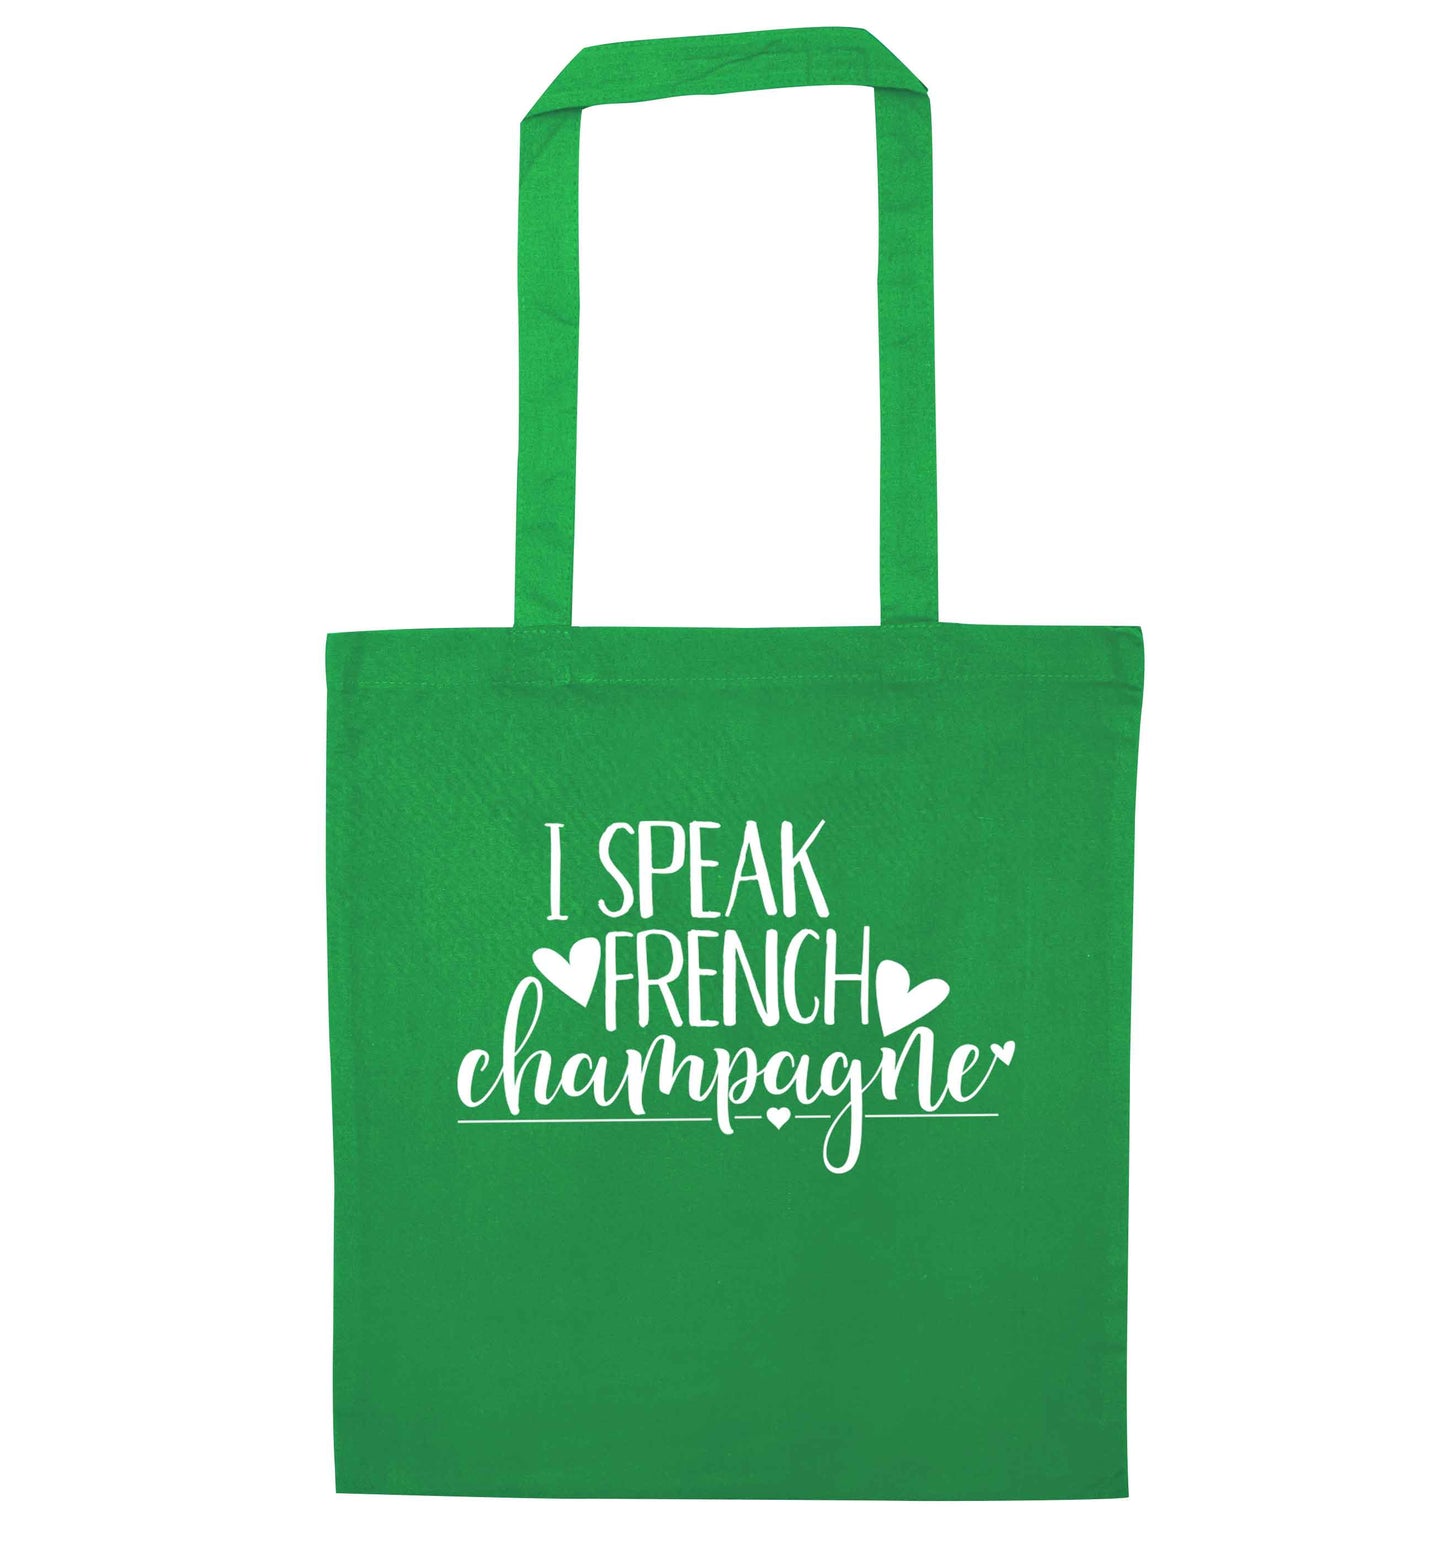 I speak french champagne green tote bag